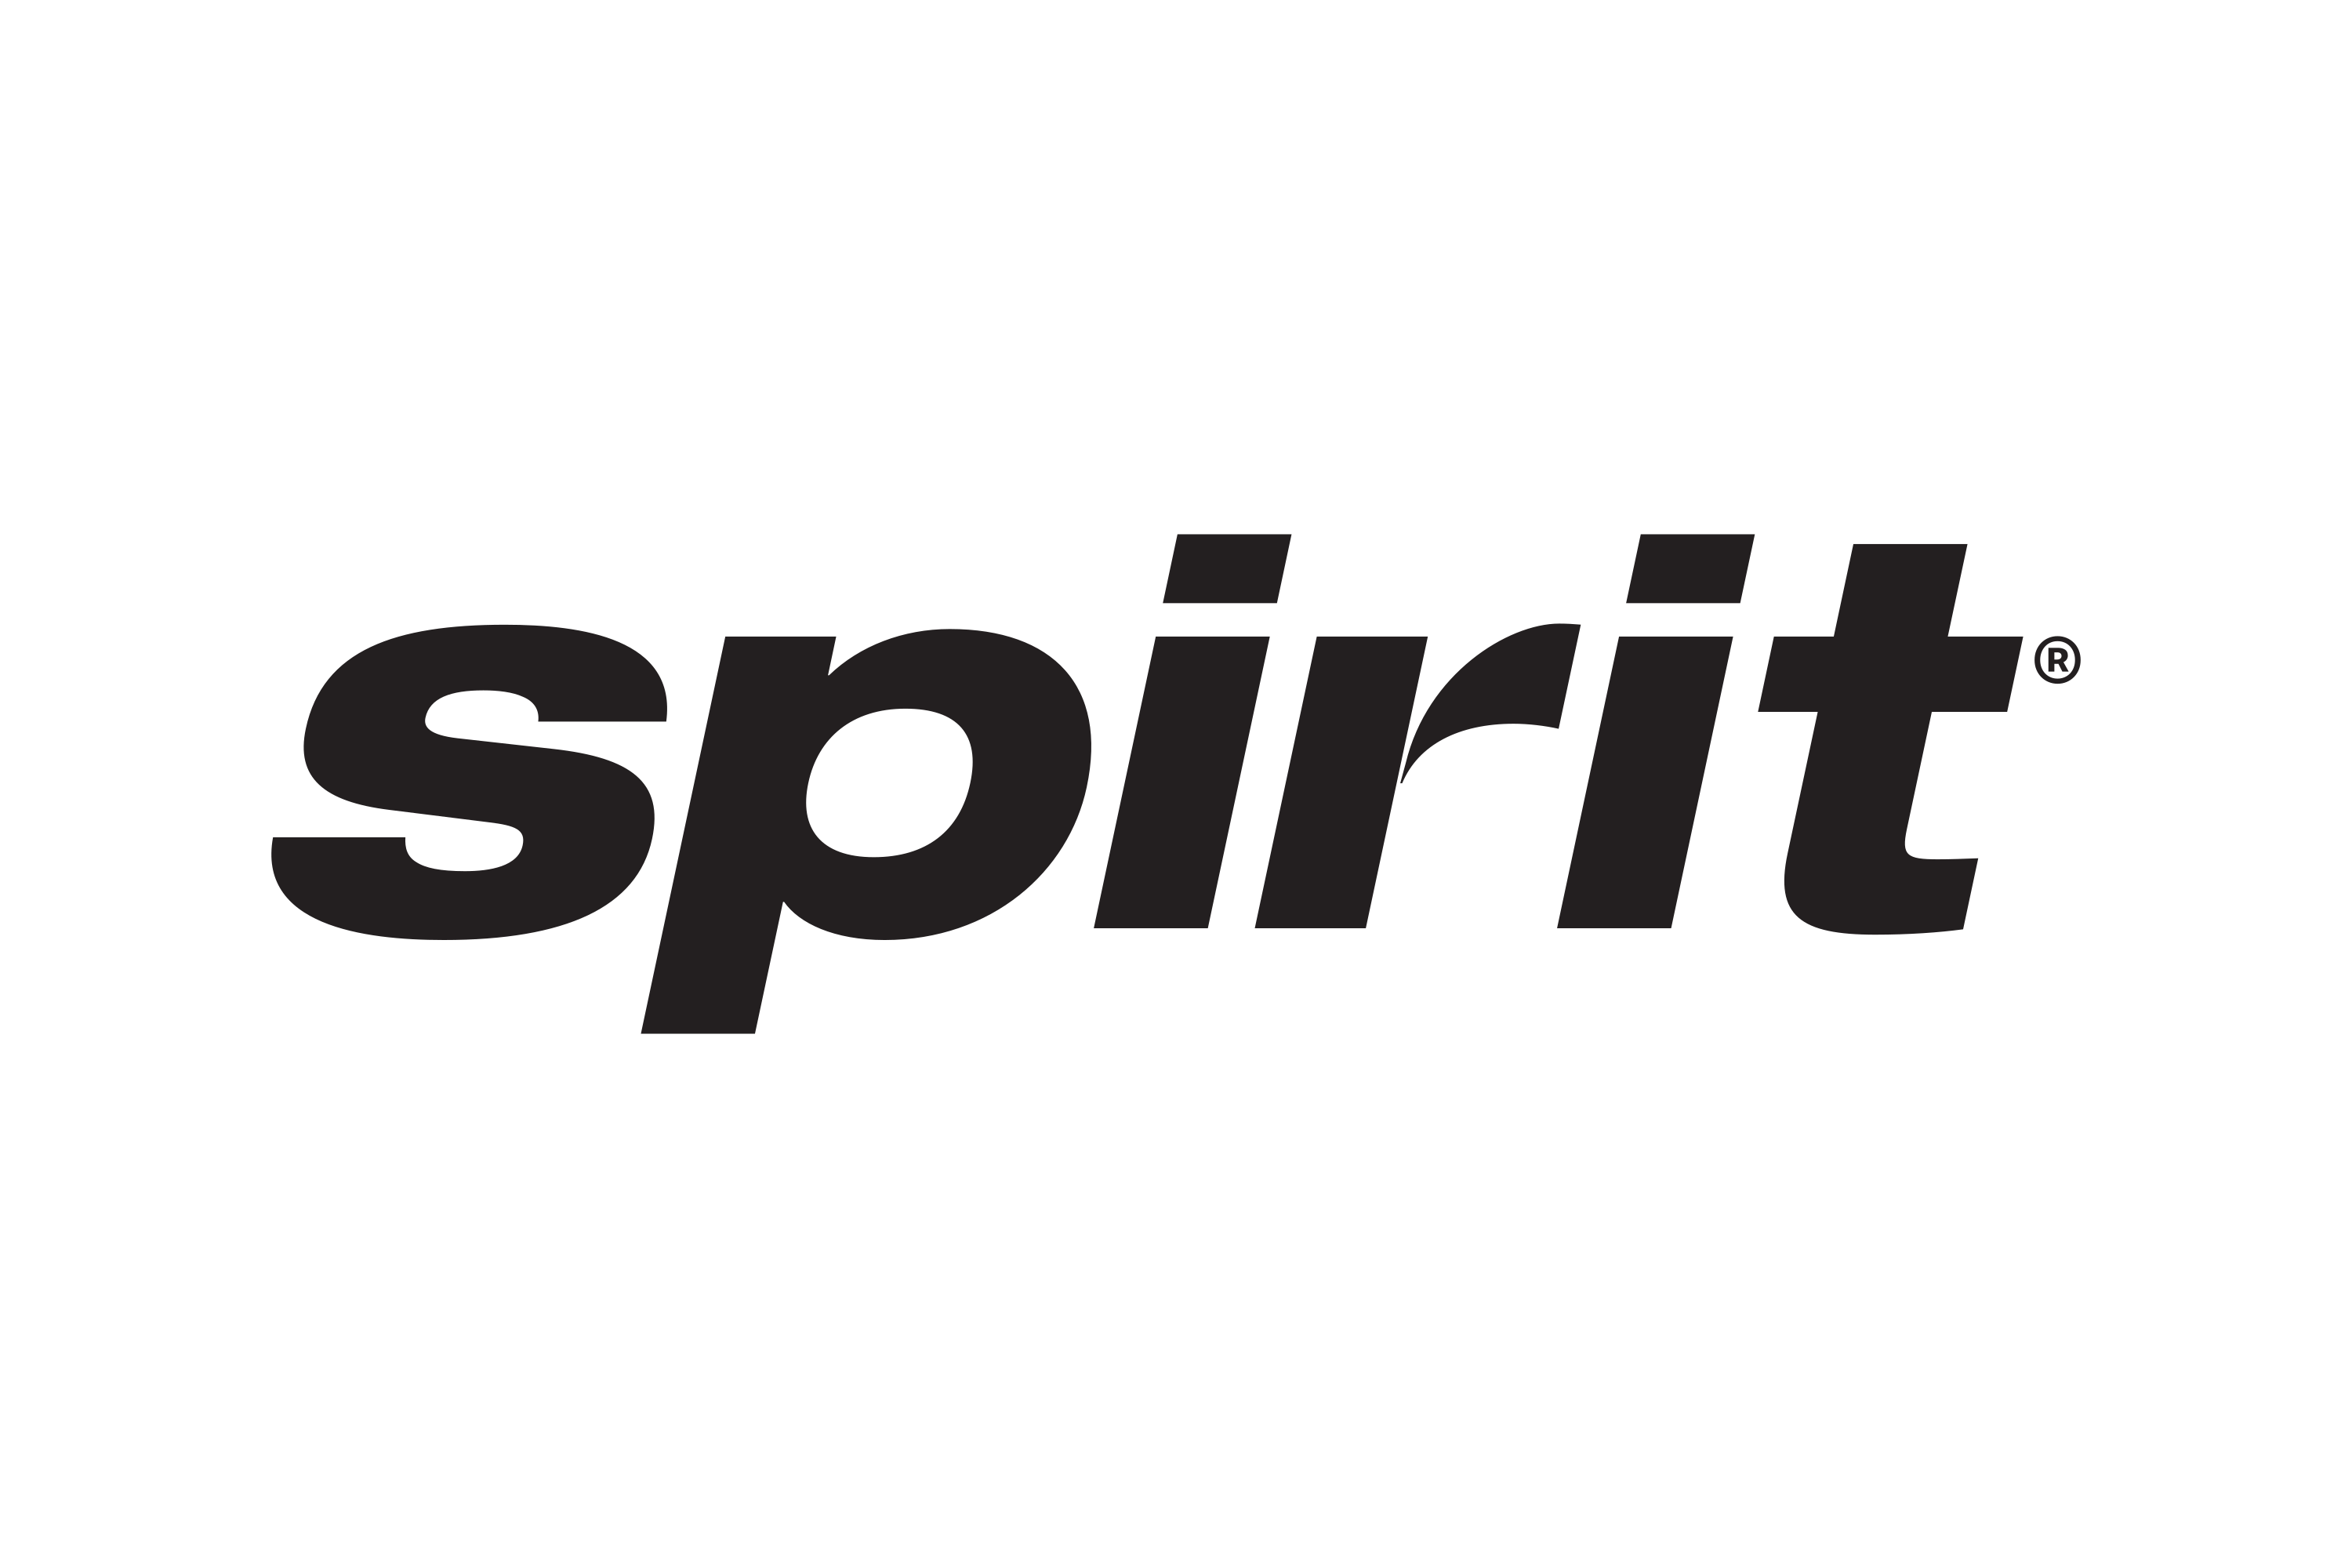 Download Spirit Airlines Logo in SVG Vector or PNG File Format - Logo.wine